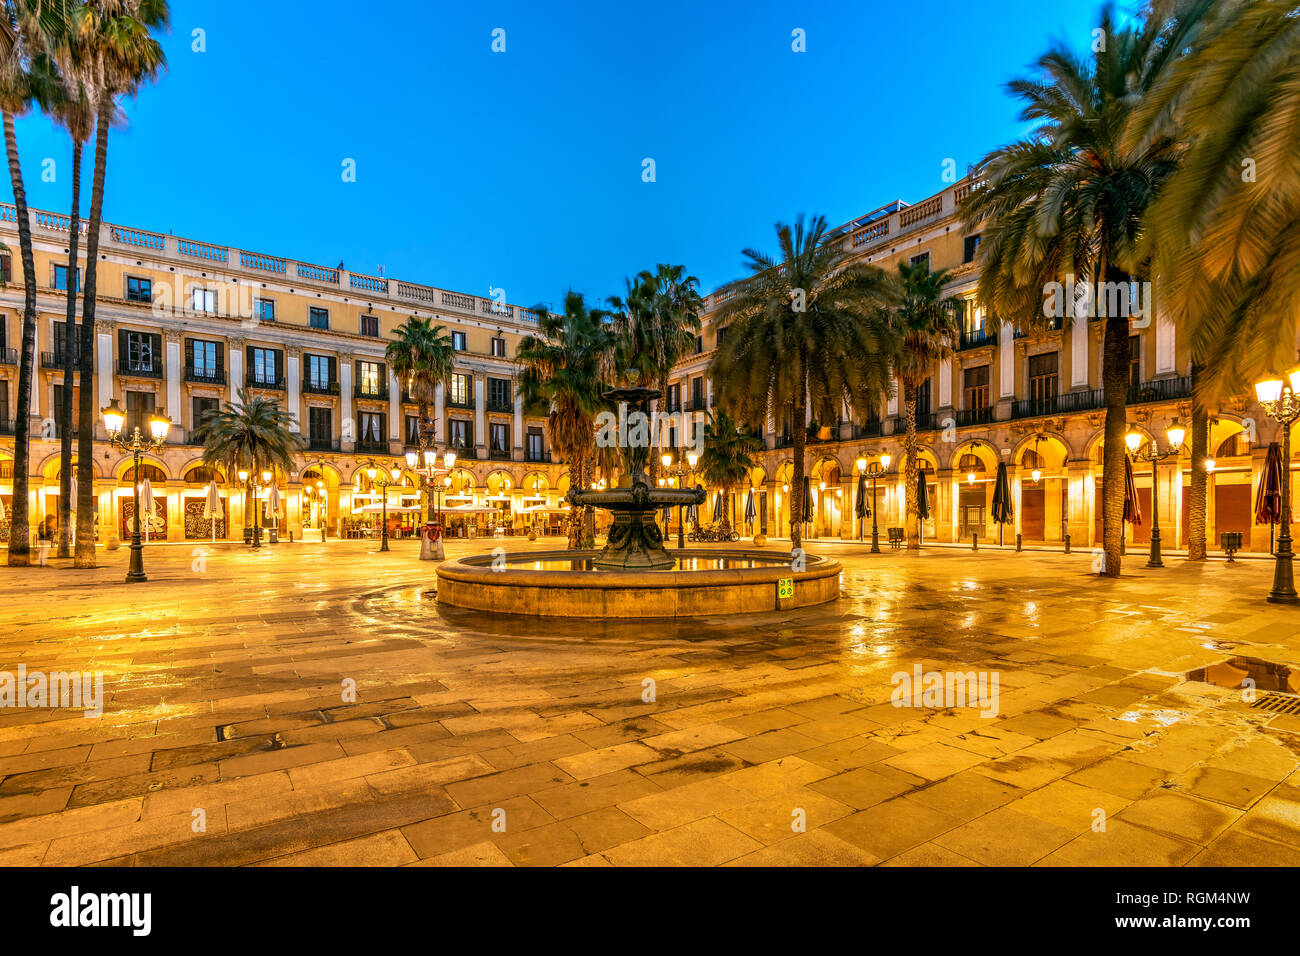 Vue nocturne de la place Plaça Reial ou la Place Royale dans le quartier gothique, Barcelone, Catalogne, Espagne Banque D'Images